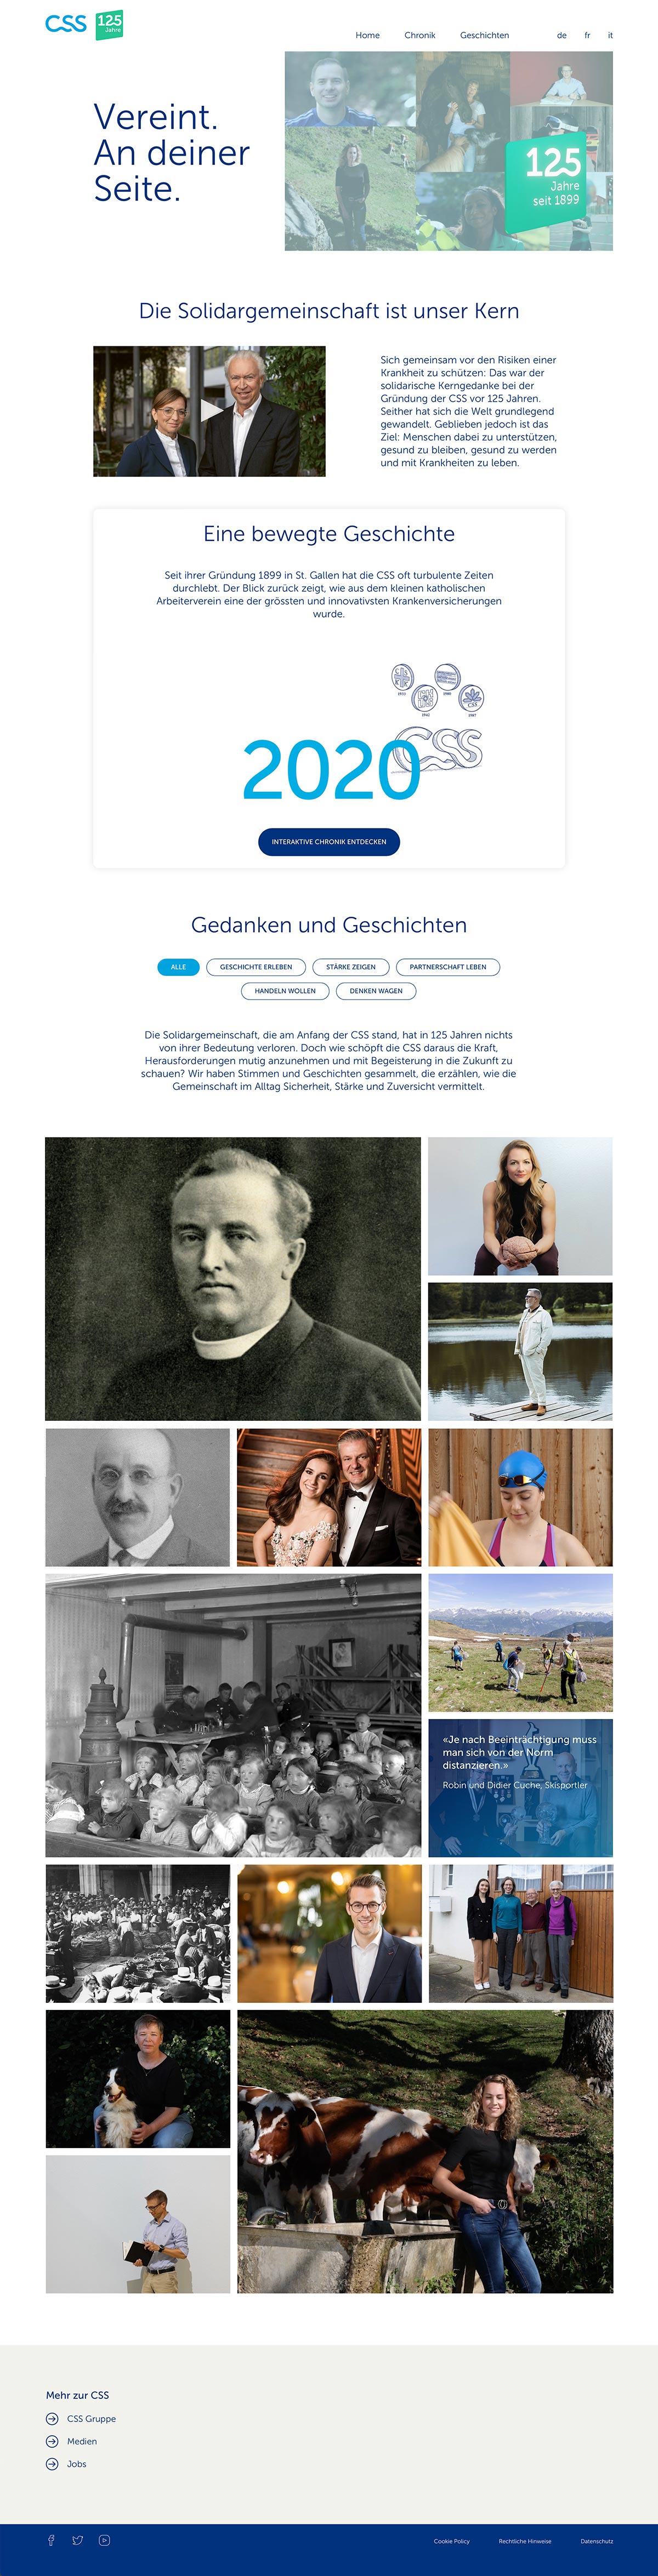 Webprojekt 125 Jahre CSS Gesundheit